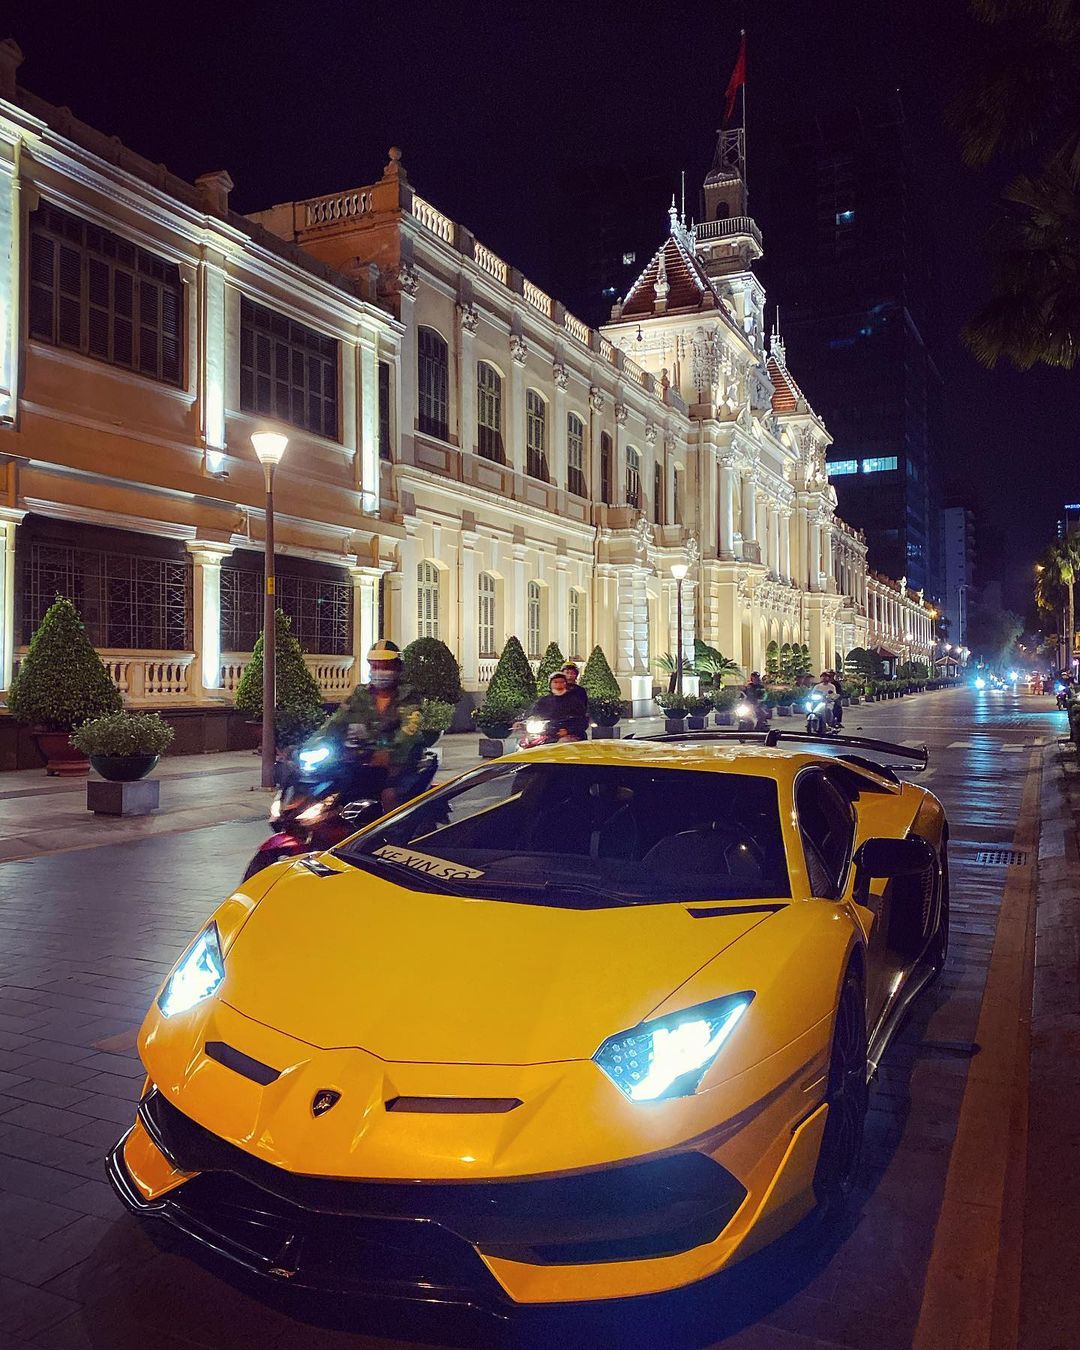 Lamborghini Aventador SVJ thứ 2 Việt Nam được chuyển về Sài Gòn, tấm biển gắn trên xe gây tò mò - Ảnh 2.